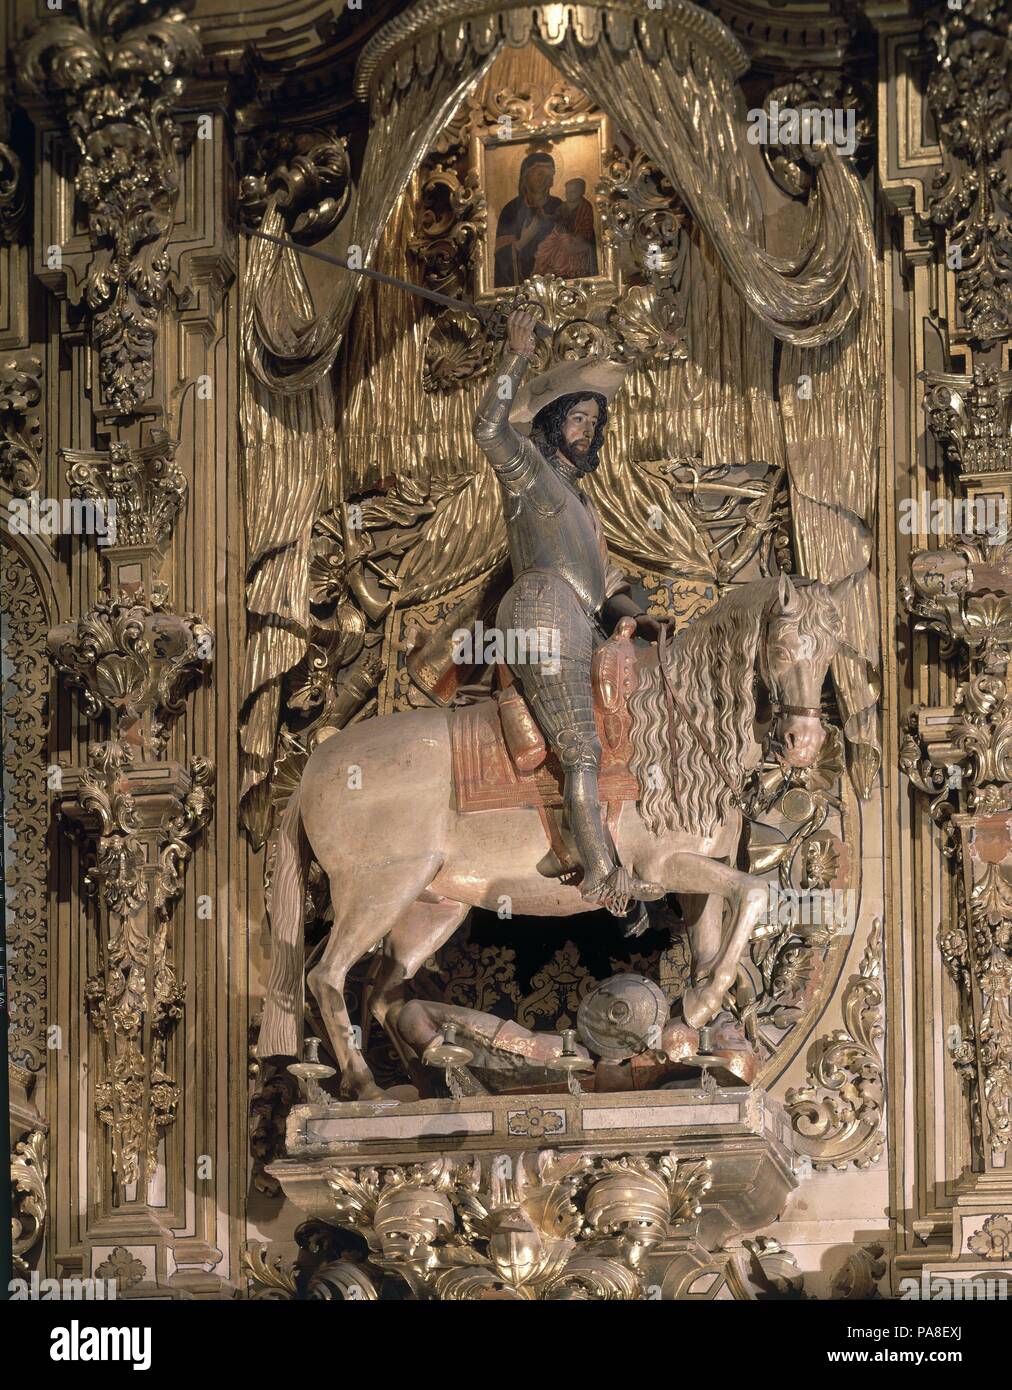 SANTIAGO ECUESTRE EN EL RETABLO DE SANTIAGO MATAMOROS - 1640 - ESCULTURA BARROCA ESPAÑOLA. Author: Alonso de Mena (1587-1646). Location: CATEDRAL-INTERIOR, GRANADA, SPAIN. Stock Photo